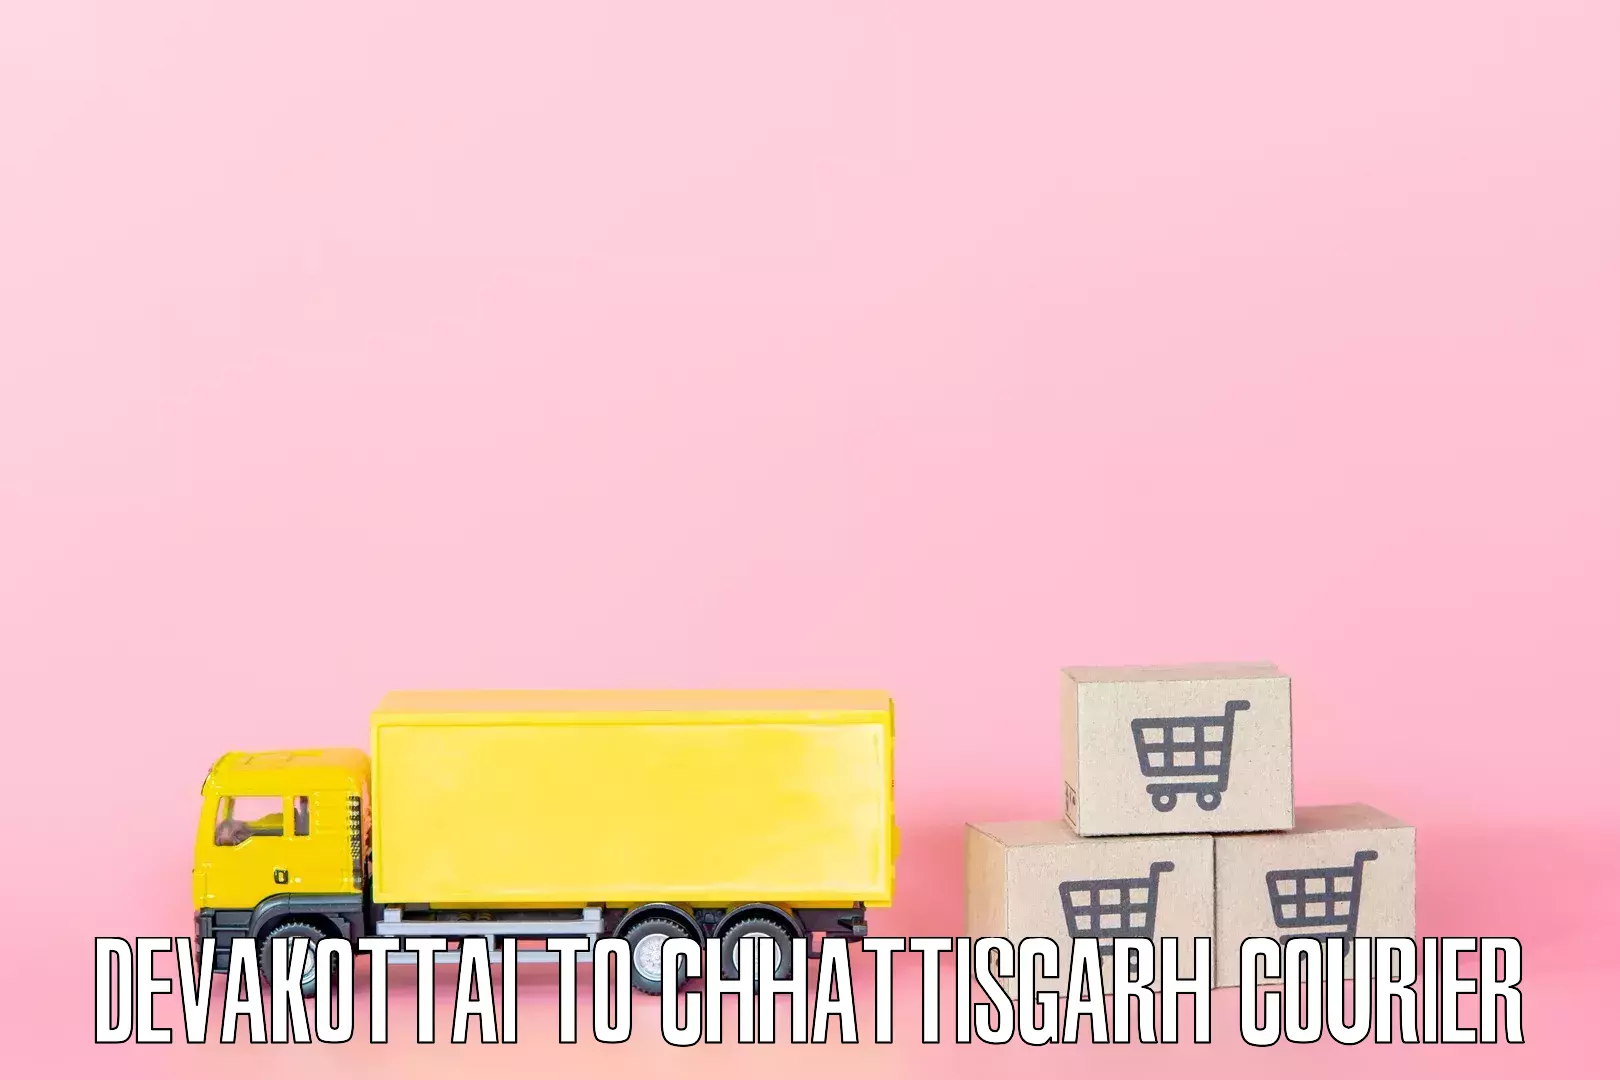 Home goods movers Devakottai to Raigarh Chhattisgarh